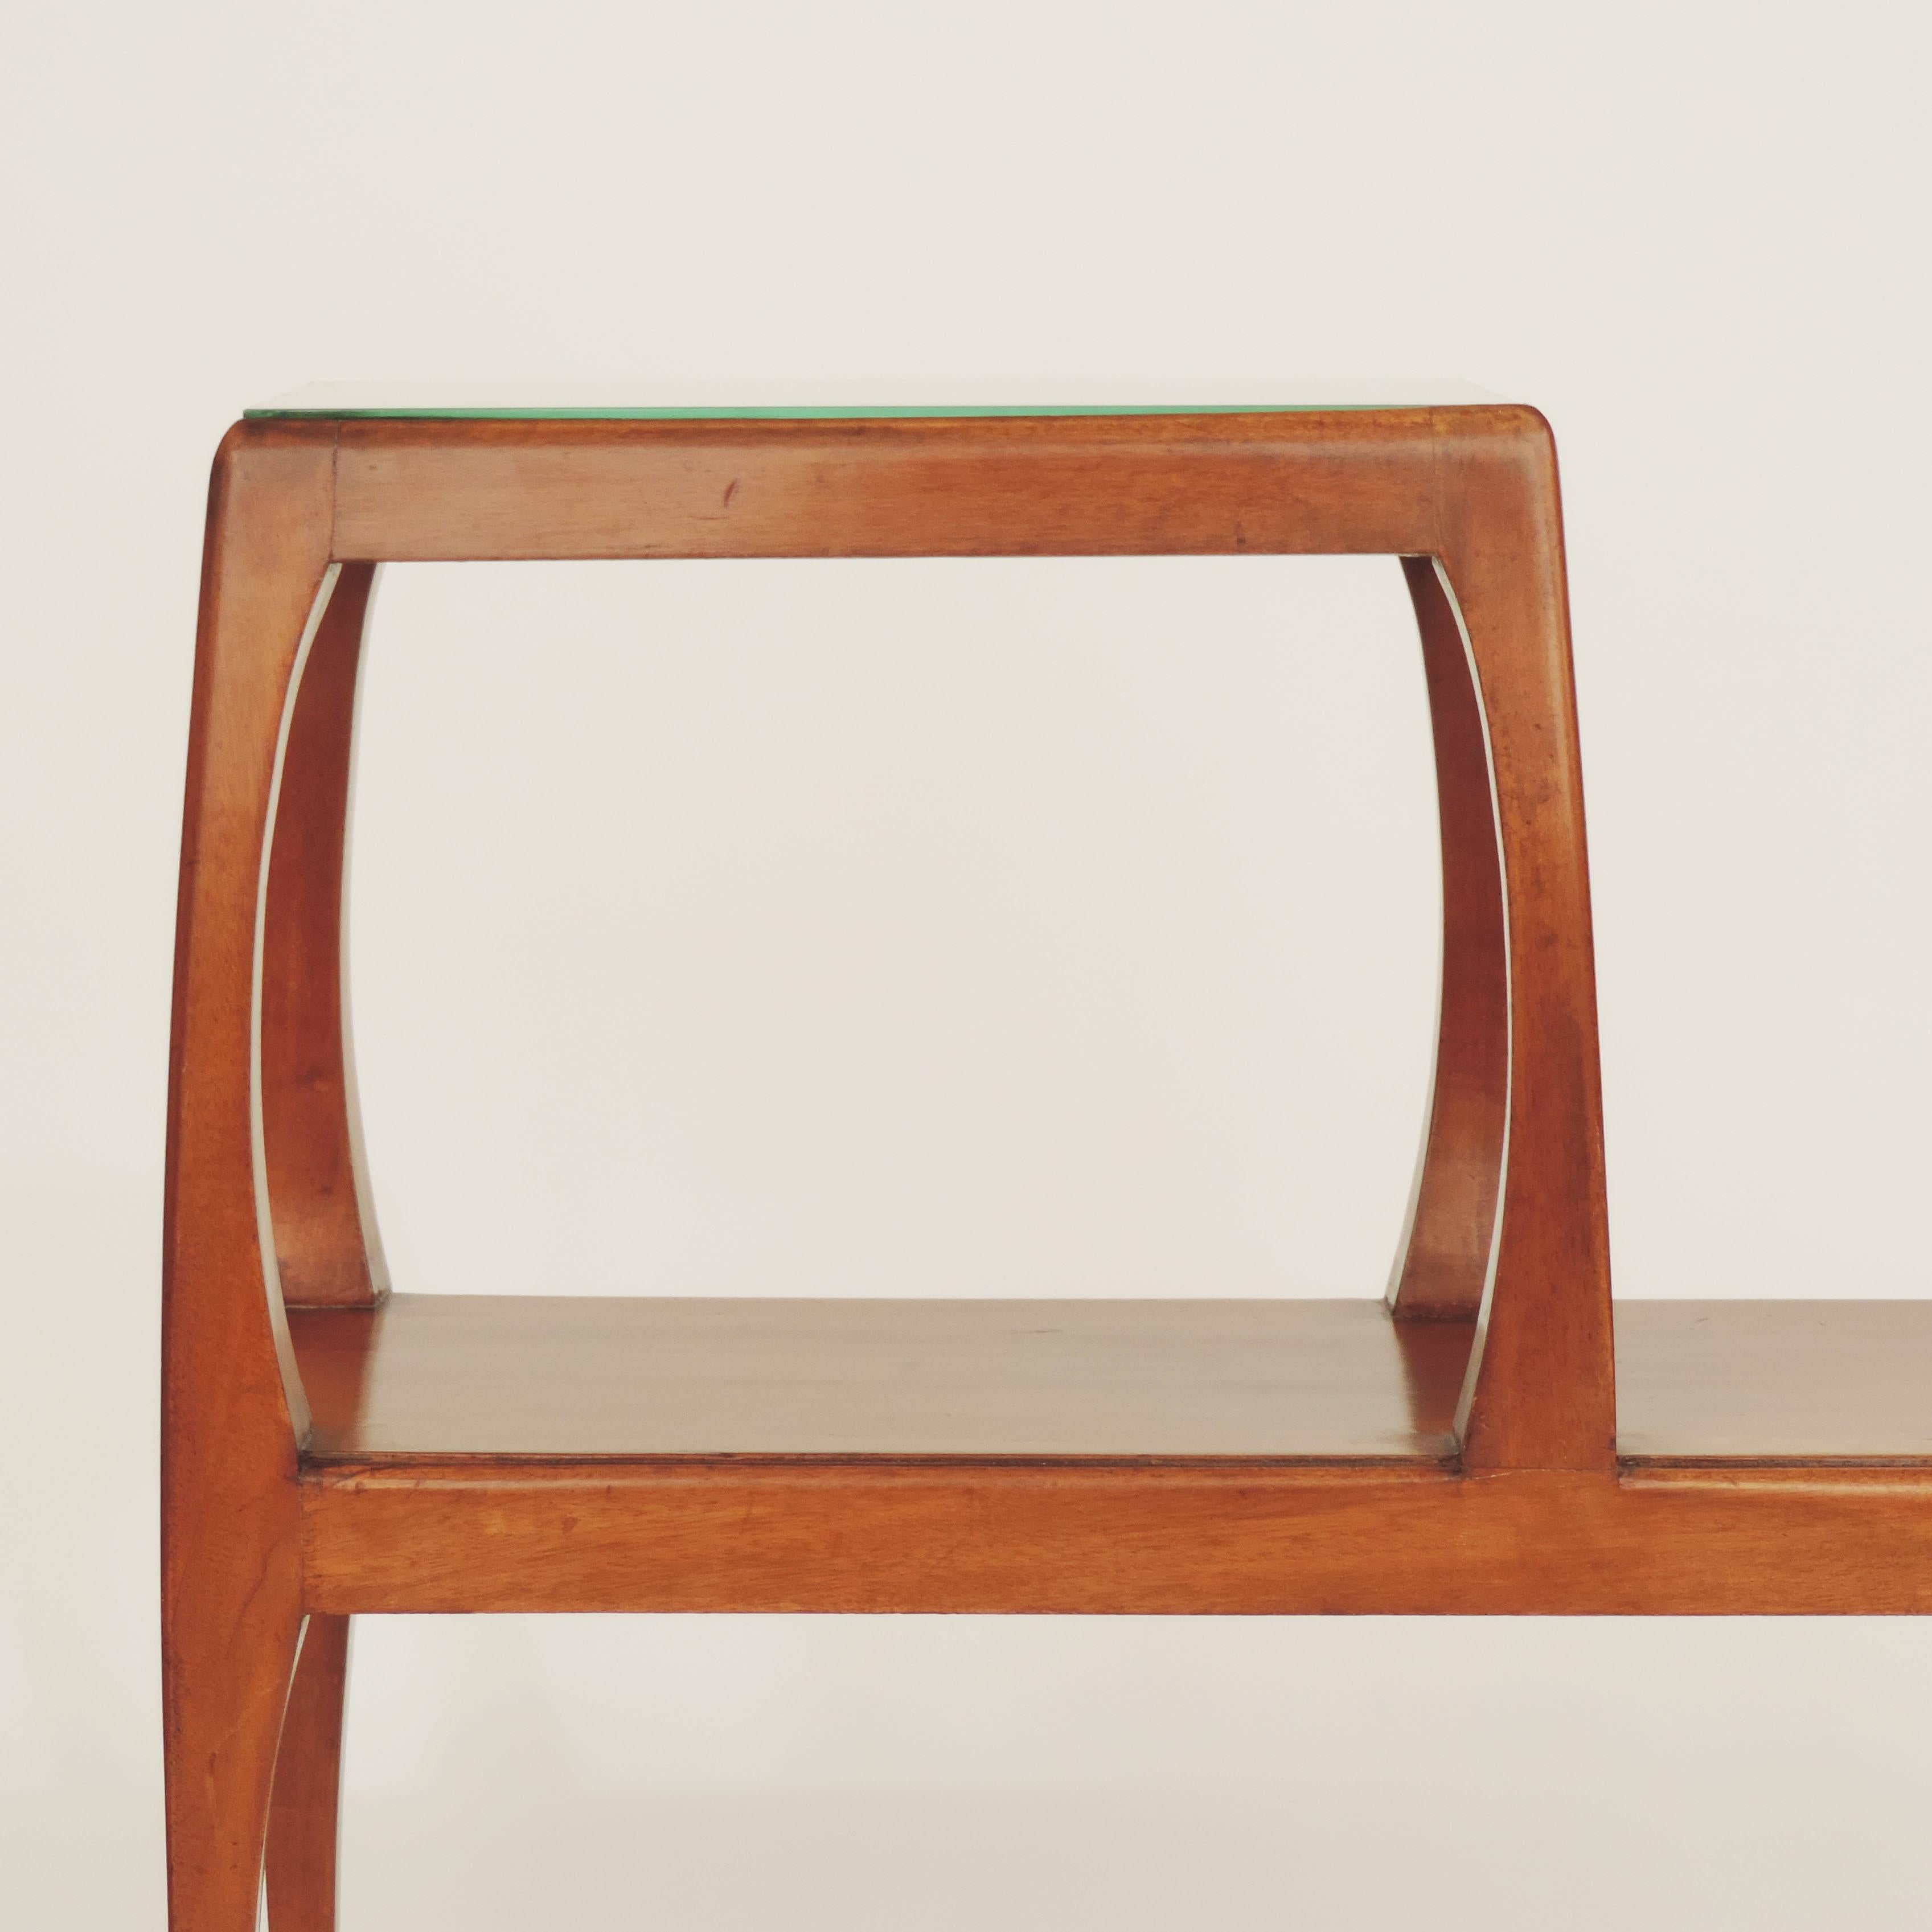 Italian minimal Arts & Crafts 1920s side table.